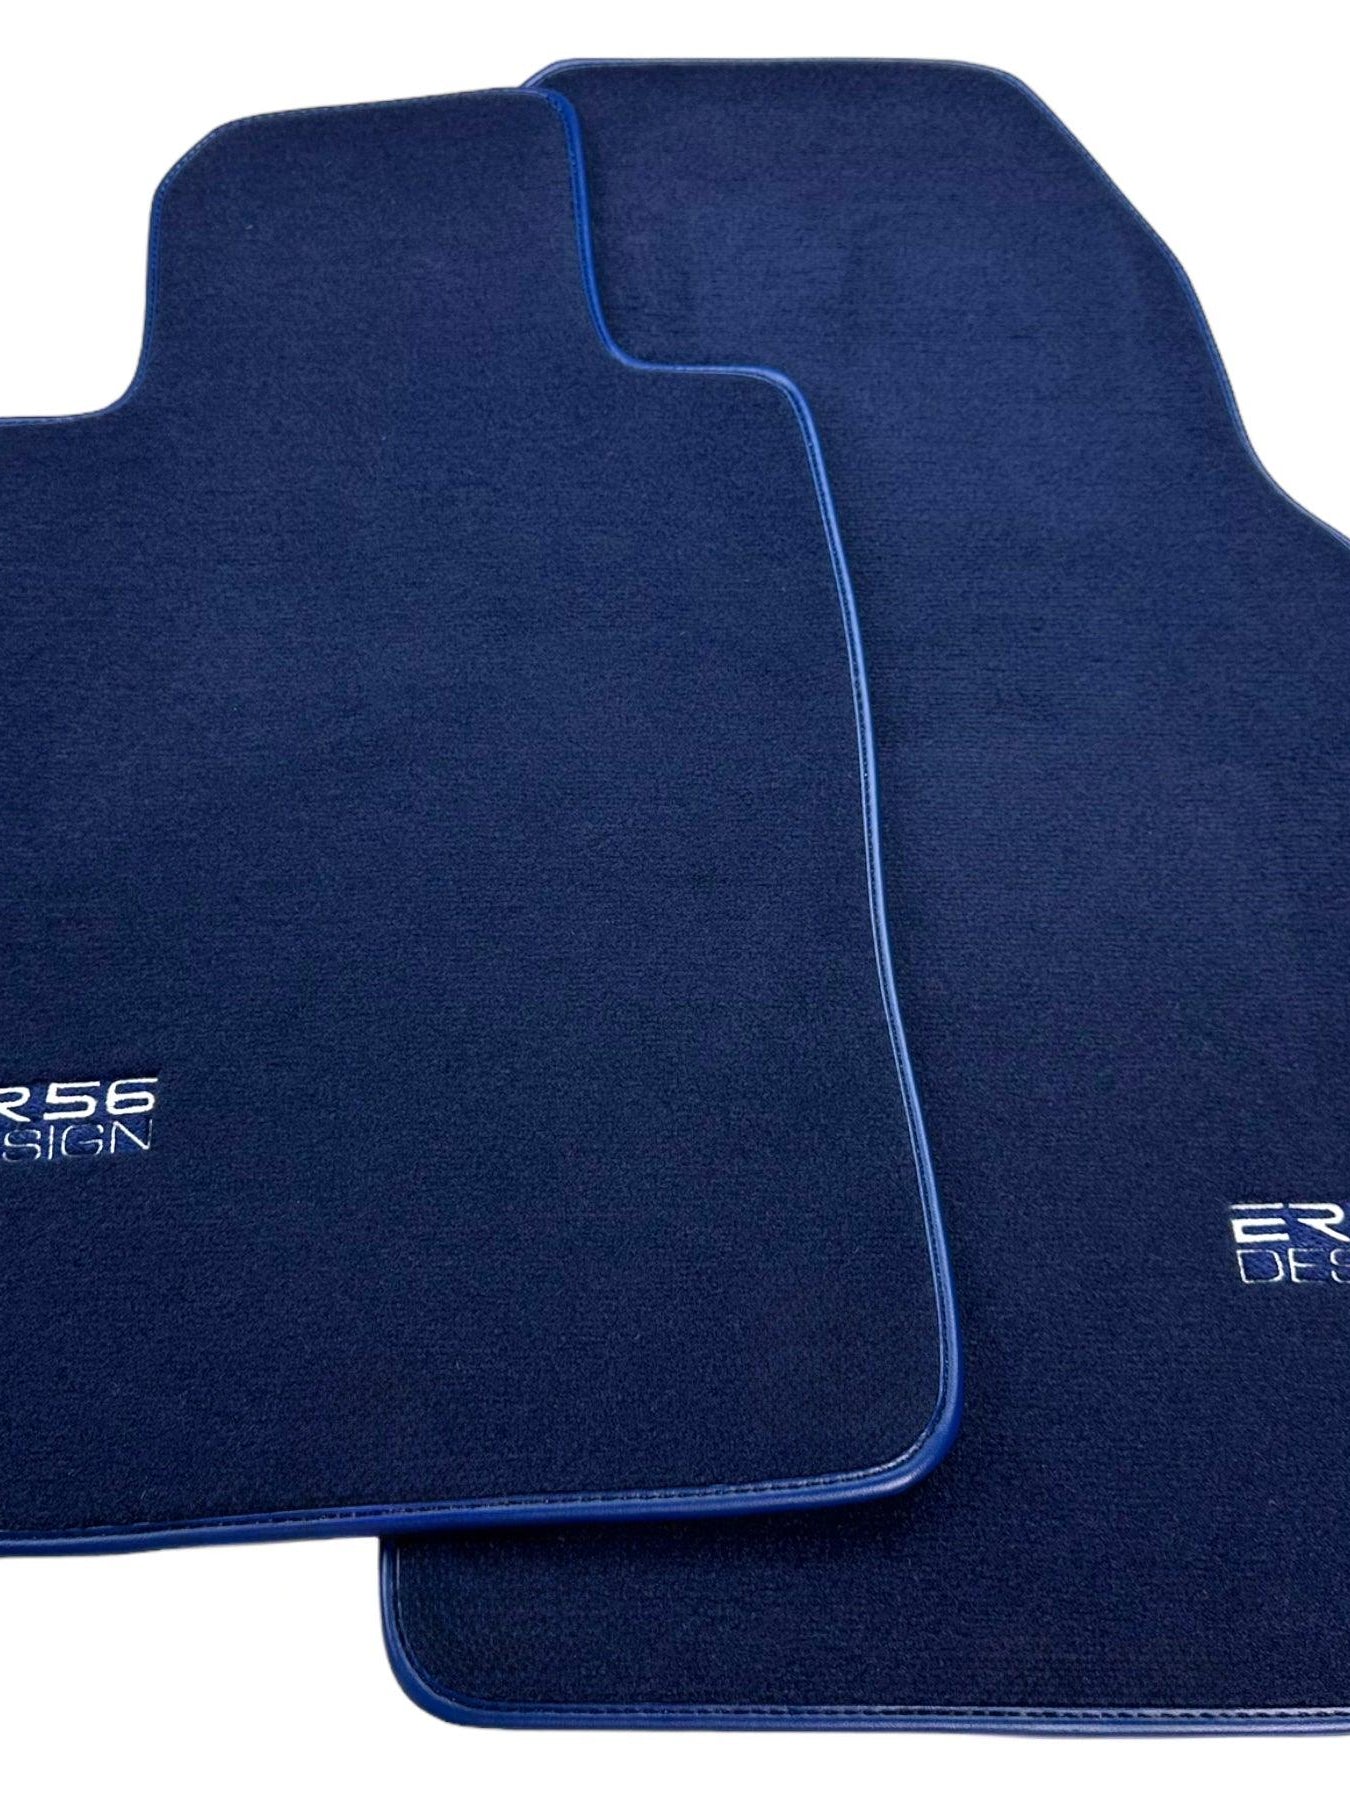 Dark Blue Floor Mats for Porsche 987 Cayman (2009-2012) | Er56 Design - AutoWin